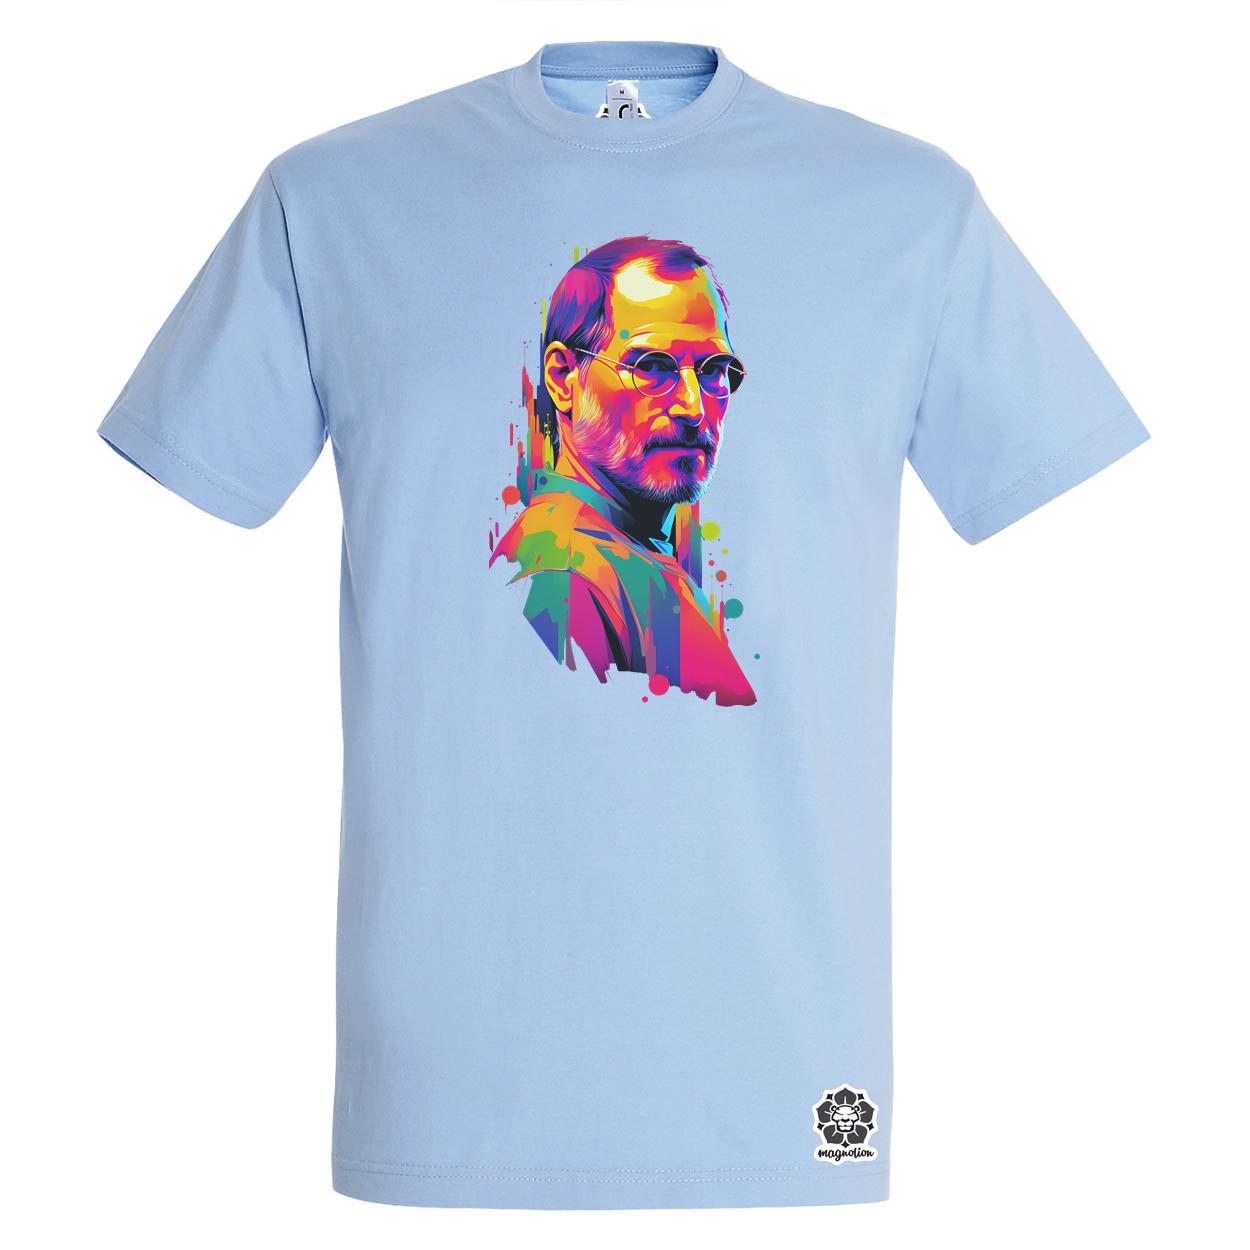 Pop art Steve Jobs v7